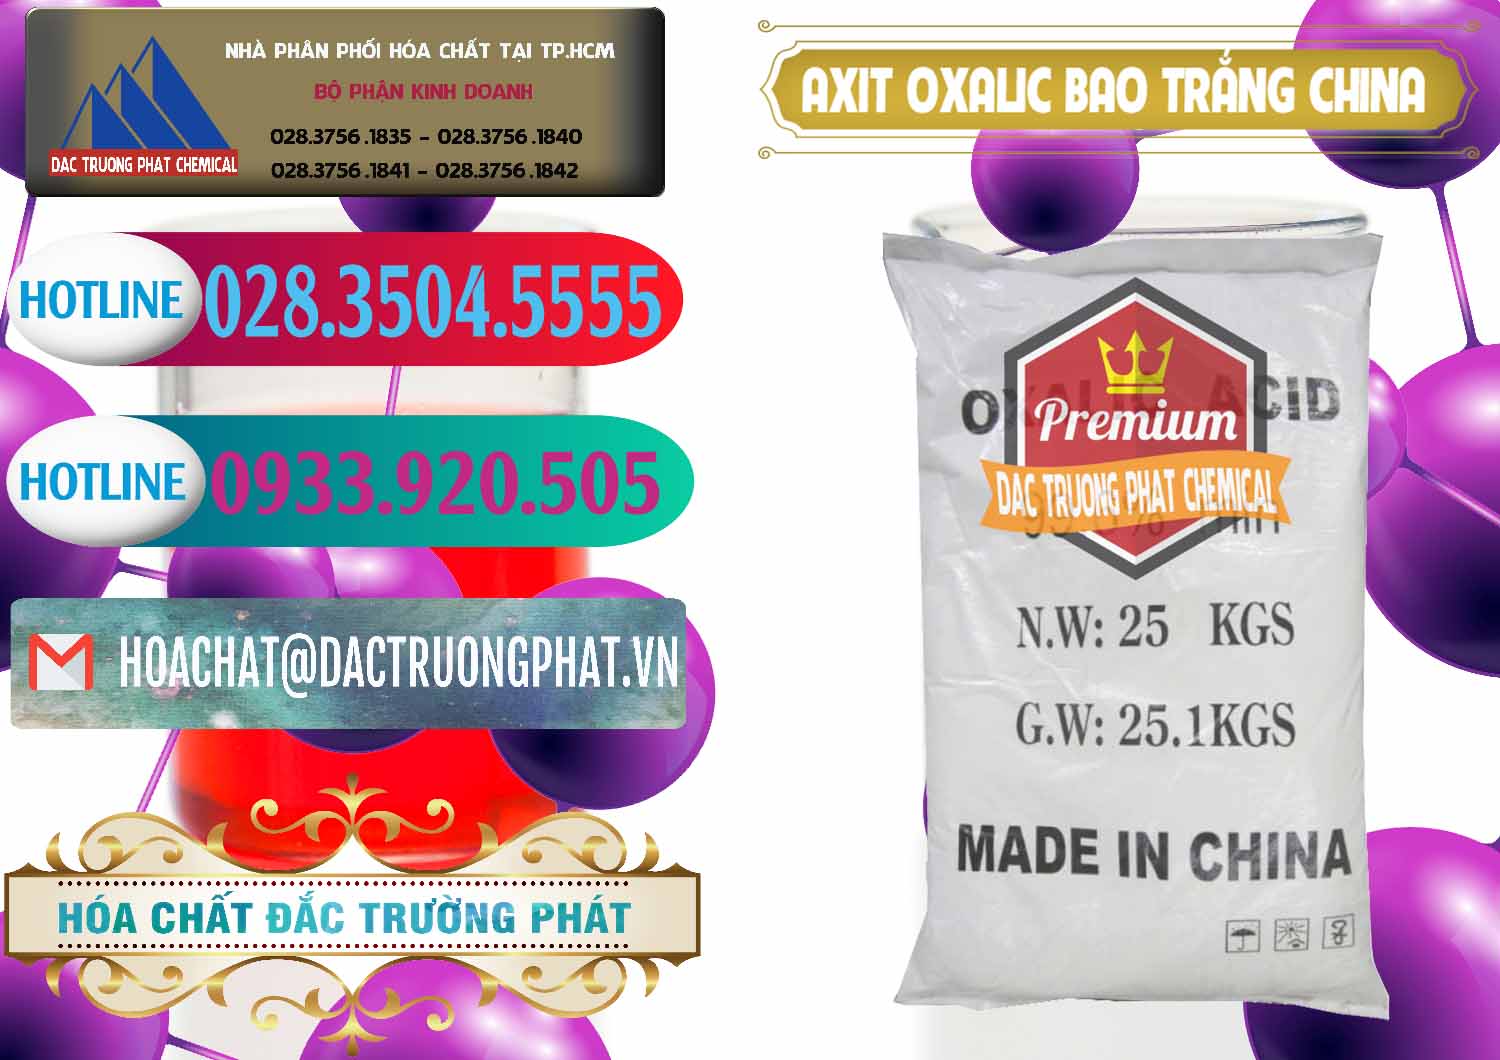 Cty bán & cung ứng Acid Oxalic – Axit Oxalic 99.6% Bao Trắng Trung Quốc China - 0270 - Cty chuyên cung cấp - bán hóa chất tại TP.HCM - truongphat.vn